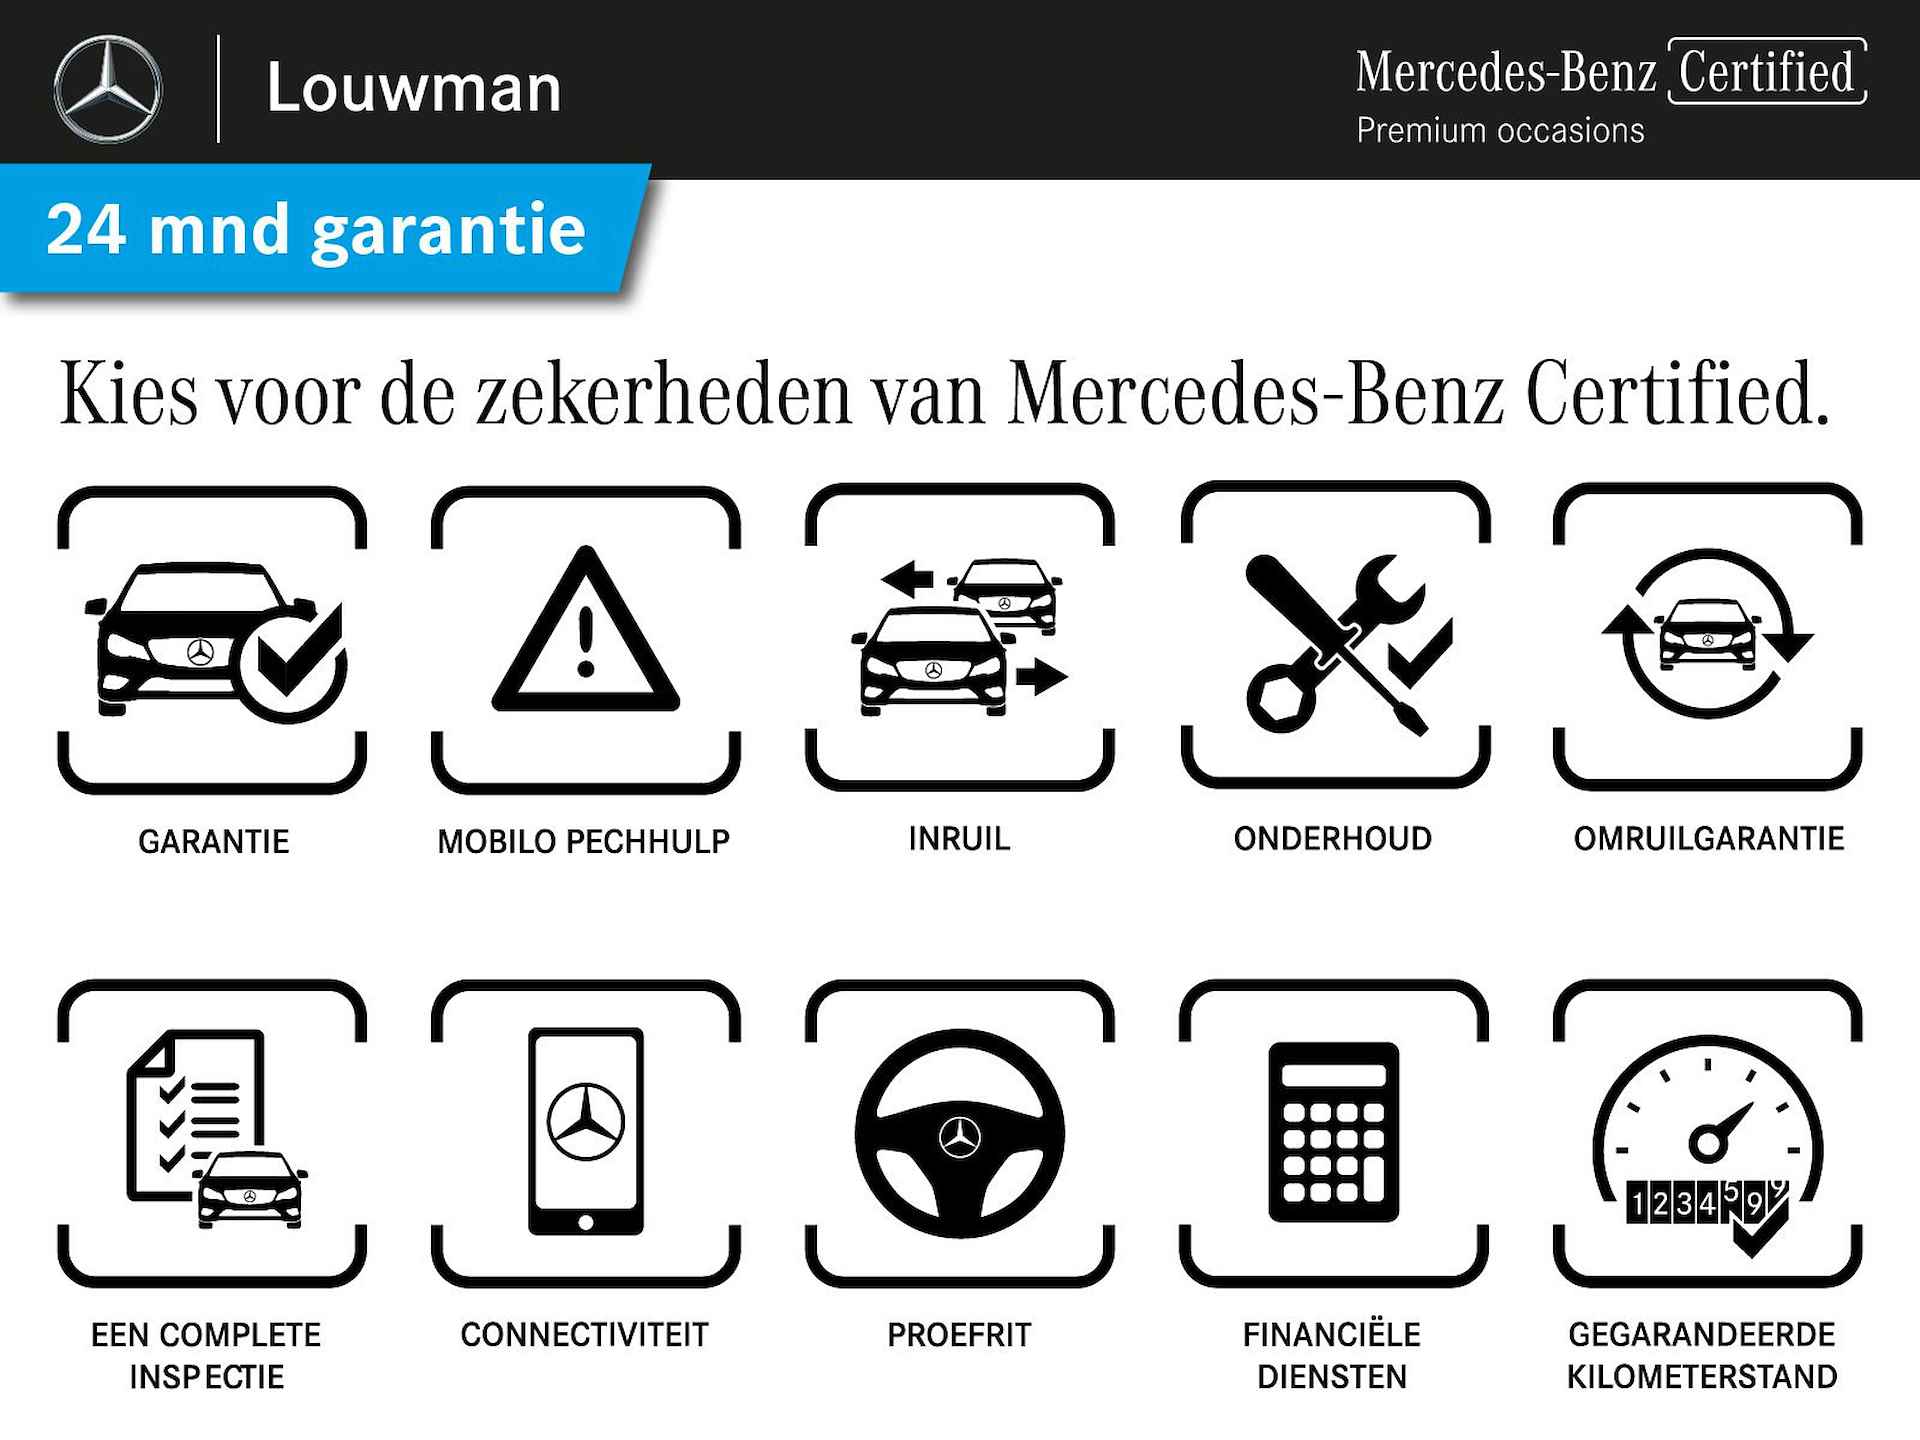 Mercedes-Benz GLE 350 e 4-MATIC AMG Nightpakket Limited 5 spaaks lichtmetalen velgen | Trekhaak | Airmatic | Treeplanken | Alarm klasse 3 |  Augmented Reality | sfeerverlichting | DAB | Parking support | inclusief 24 maanden MB Certified garantie voor europa - 45/45